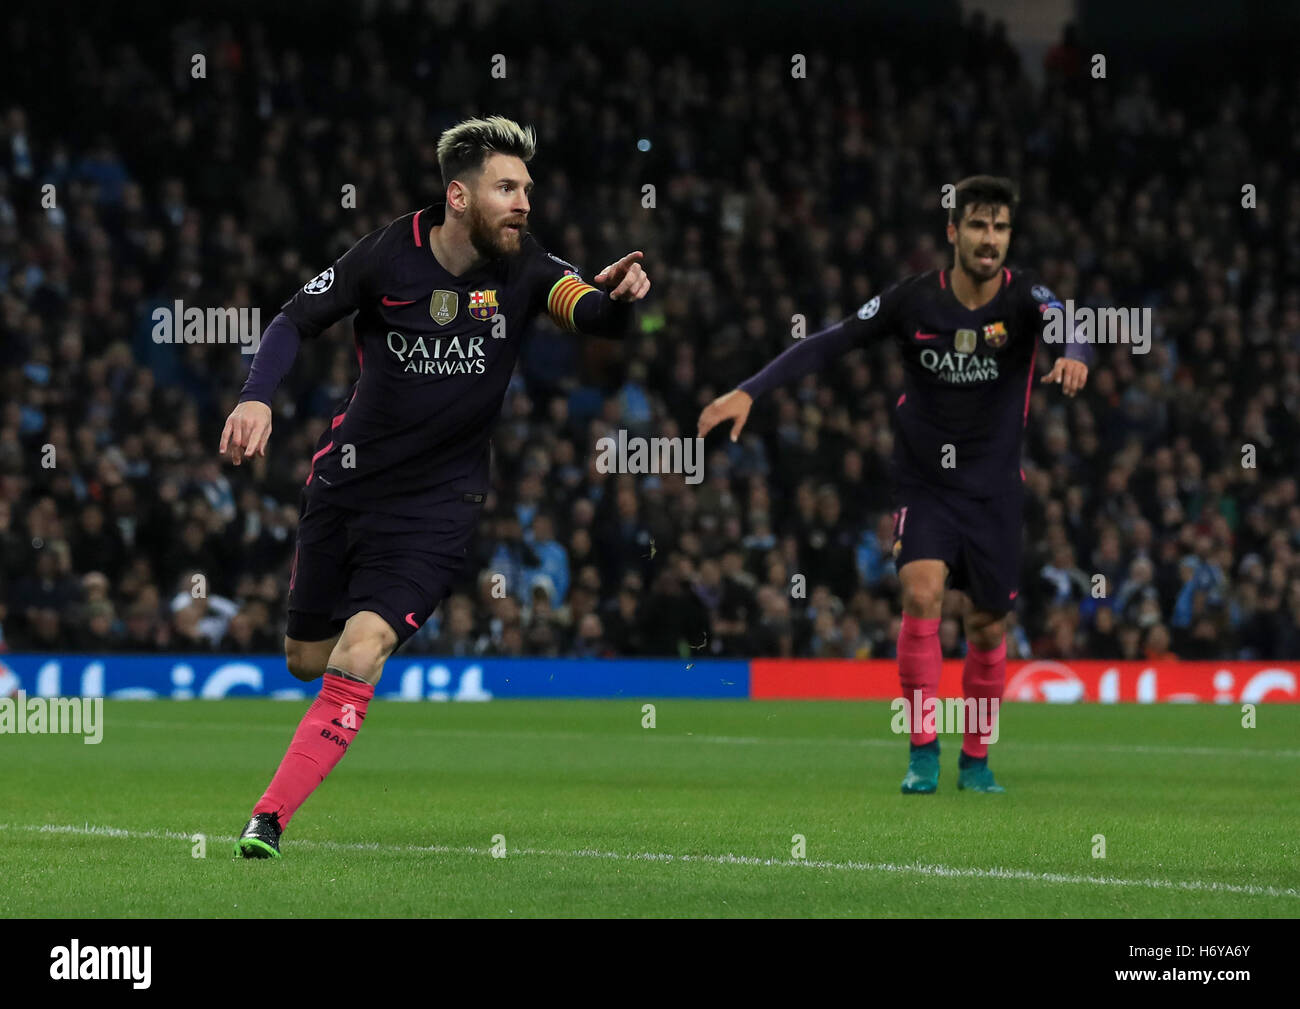 La Barcelone Lionel Messi célèbre équipes marquant son premier but du jeu au cours de l'UEFA Champions League à l'Etihad Stadium, Manchester. Banque D'Images